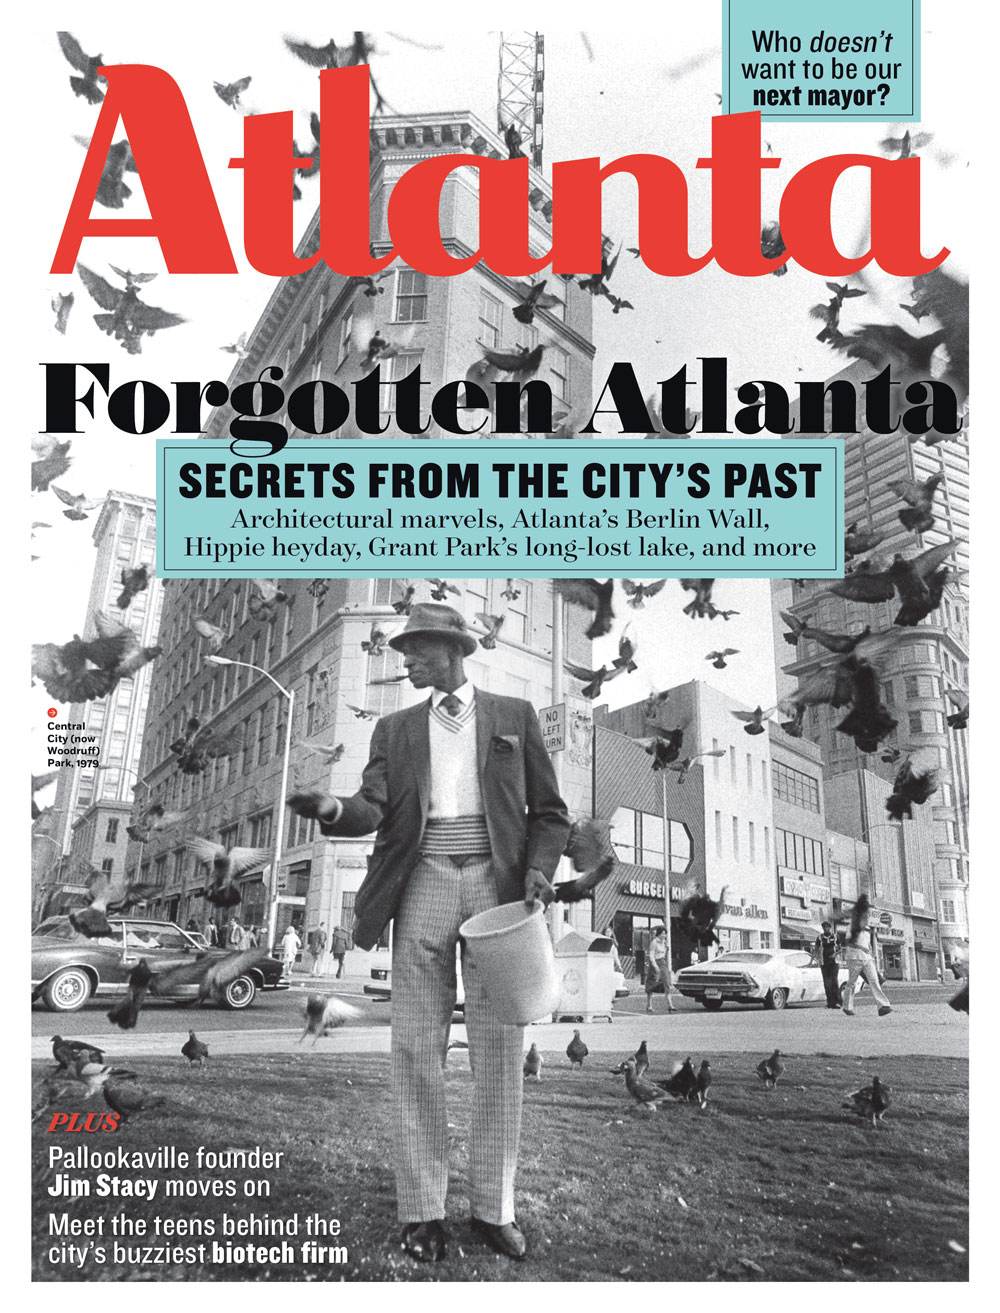 Forgotten Atlanta